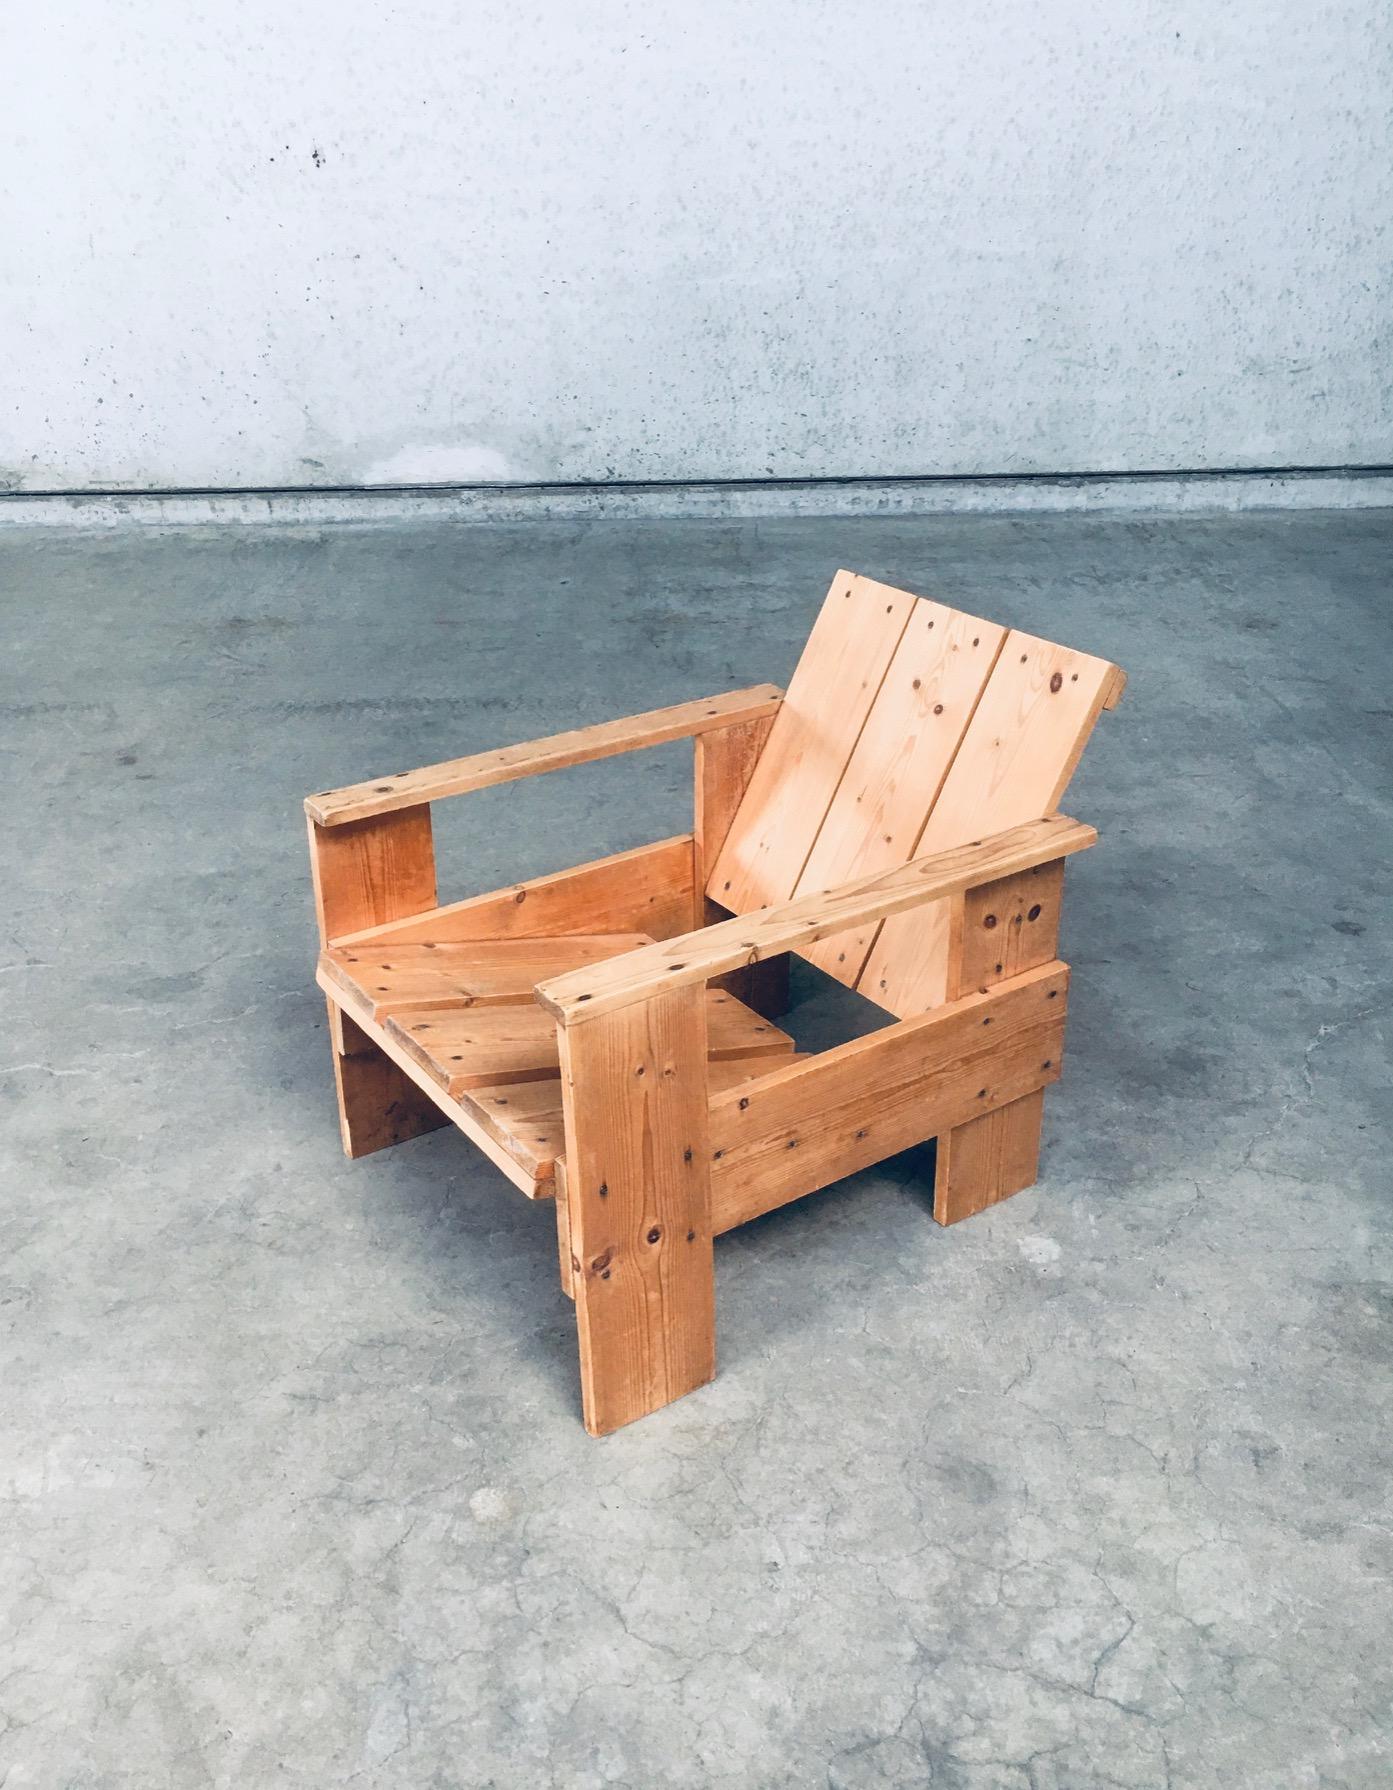 De Stijl Movement Dutch Design Pine CRATE Chair by Gerrit Rietveld For Sale 1